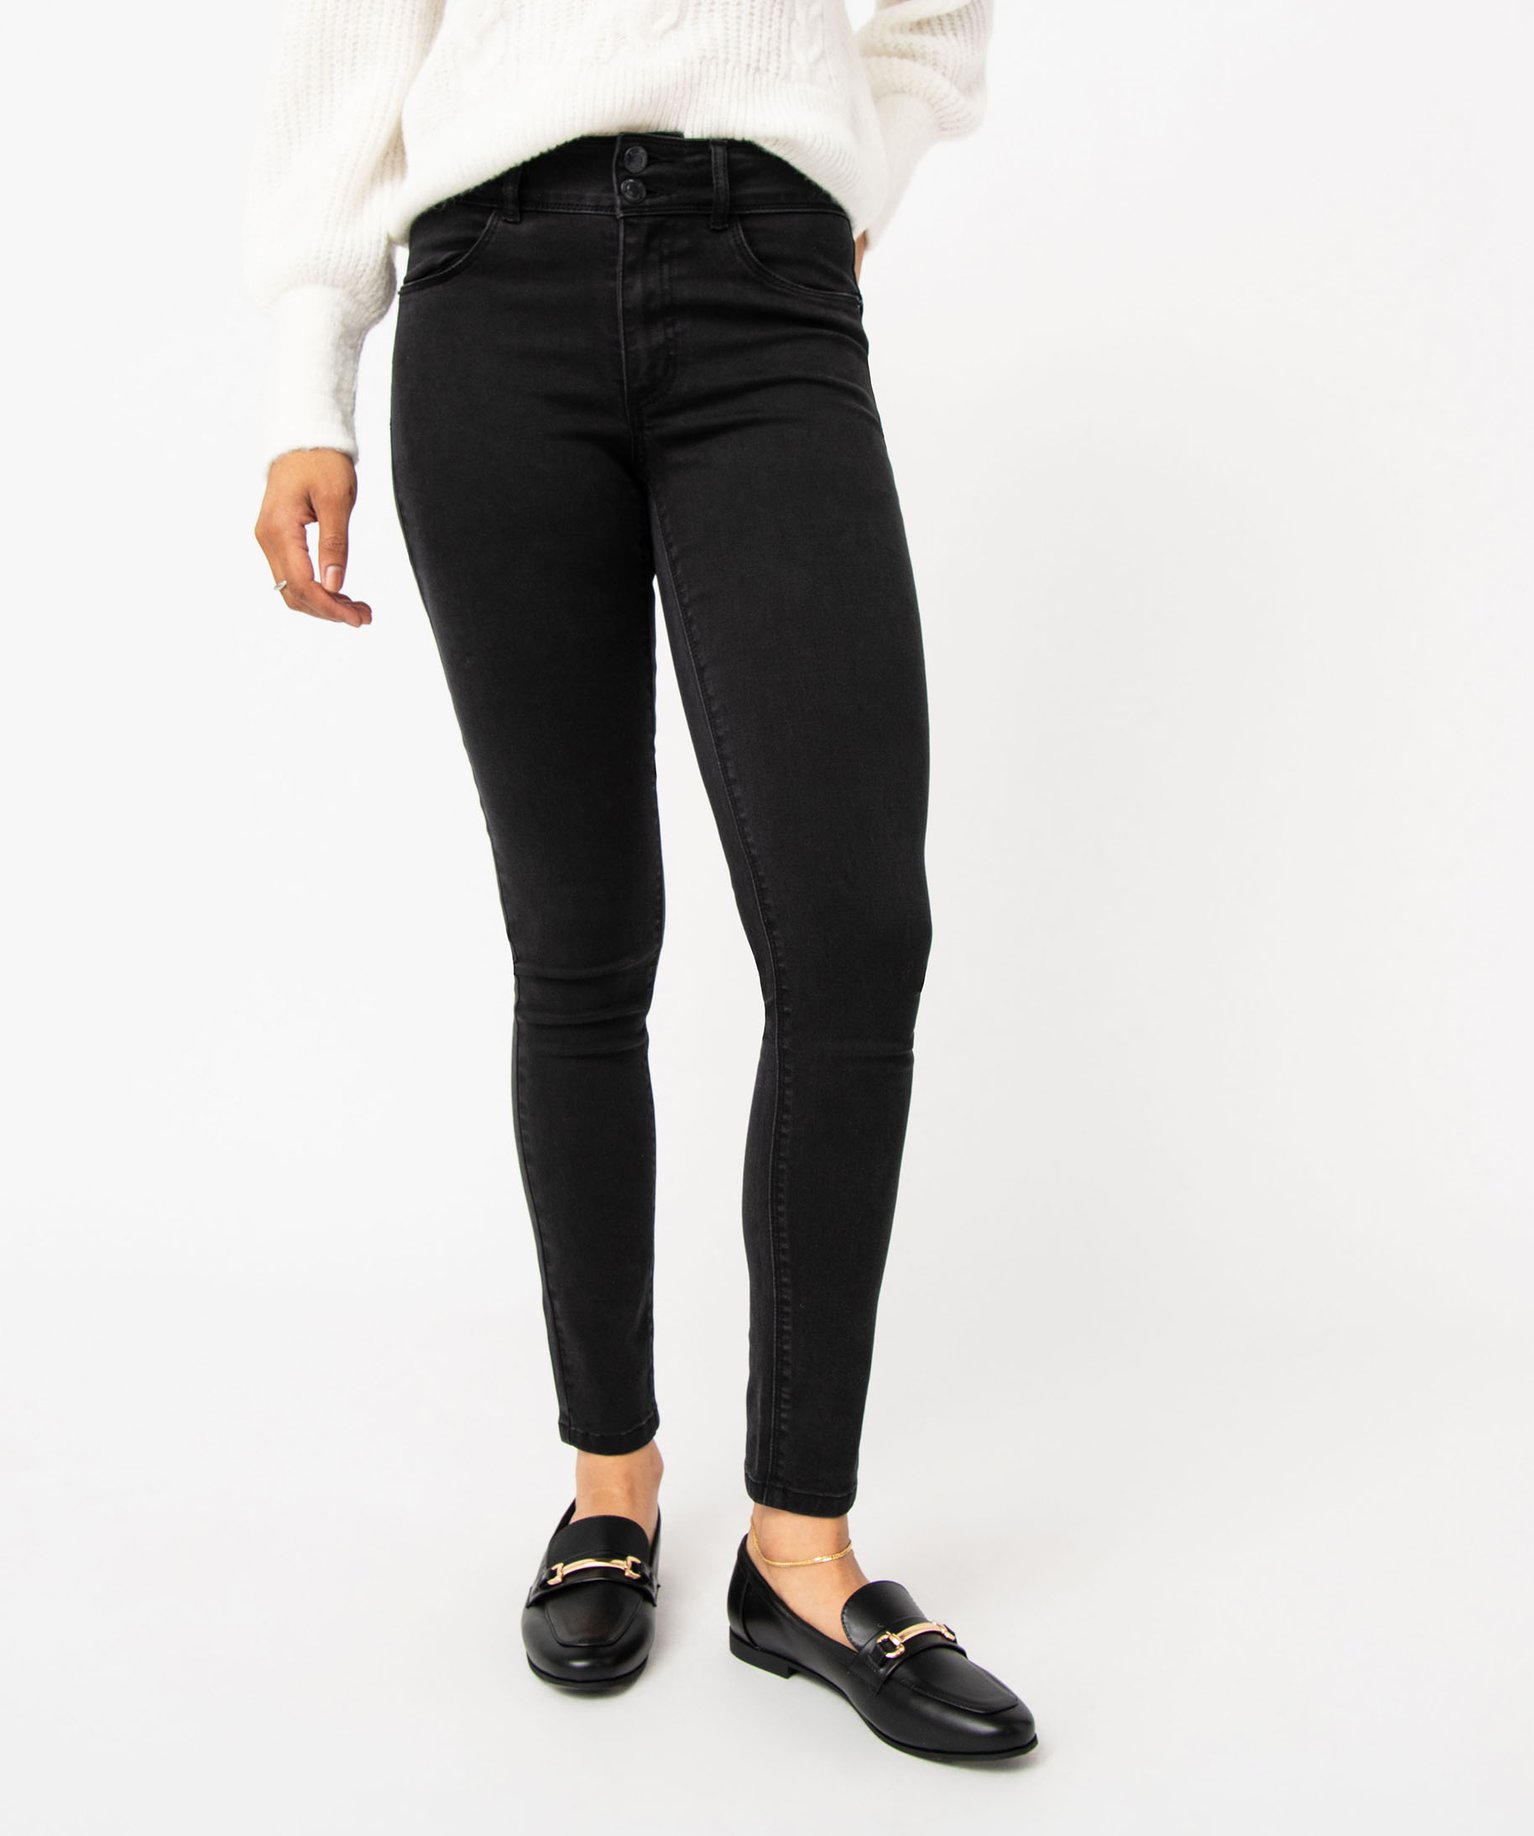 jean skinny push-up femme noir pantalons